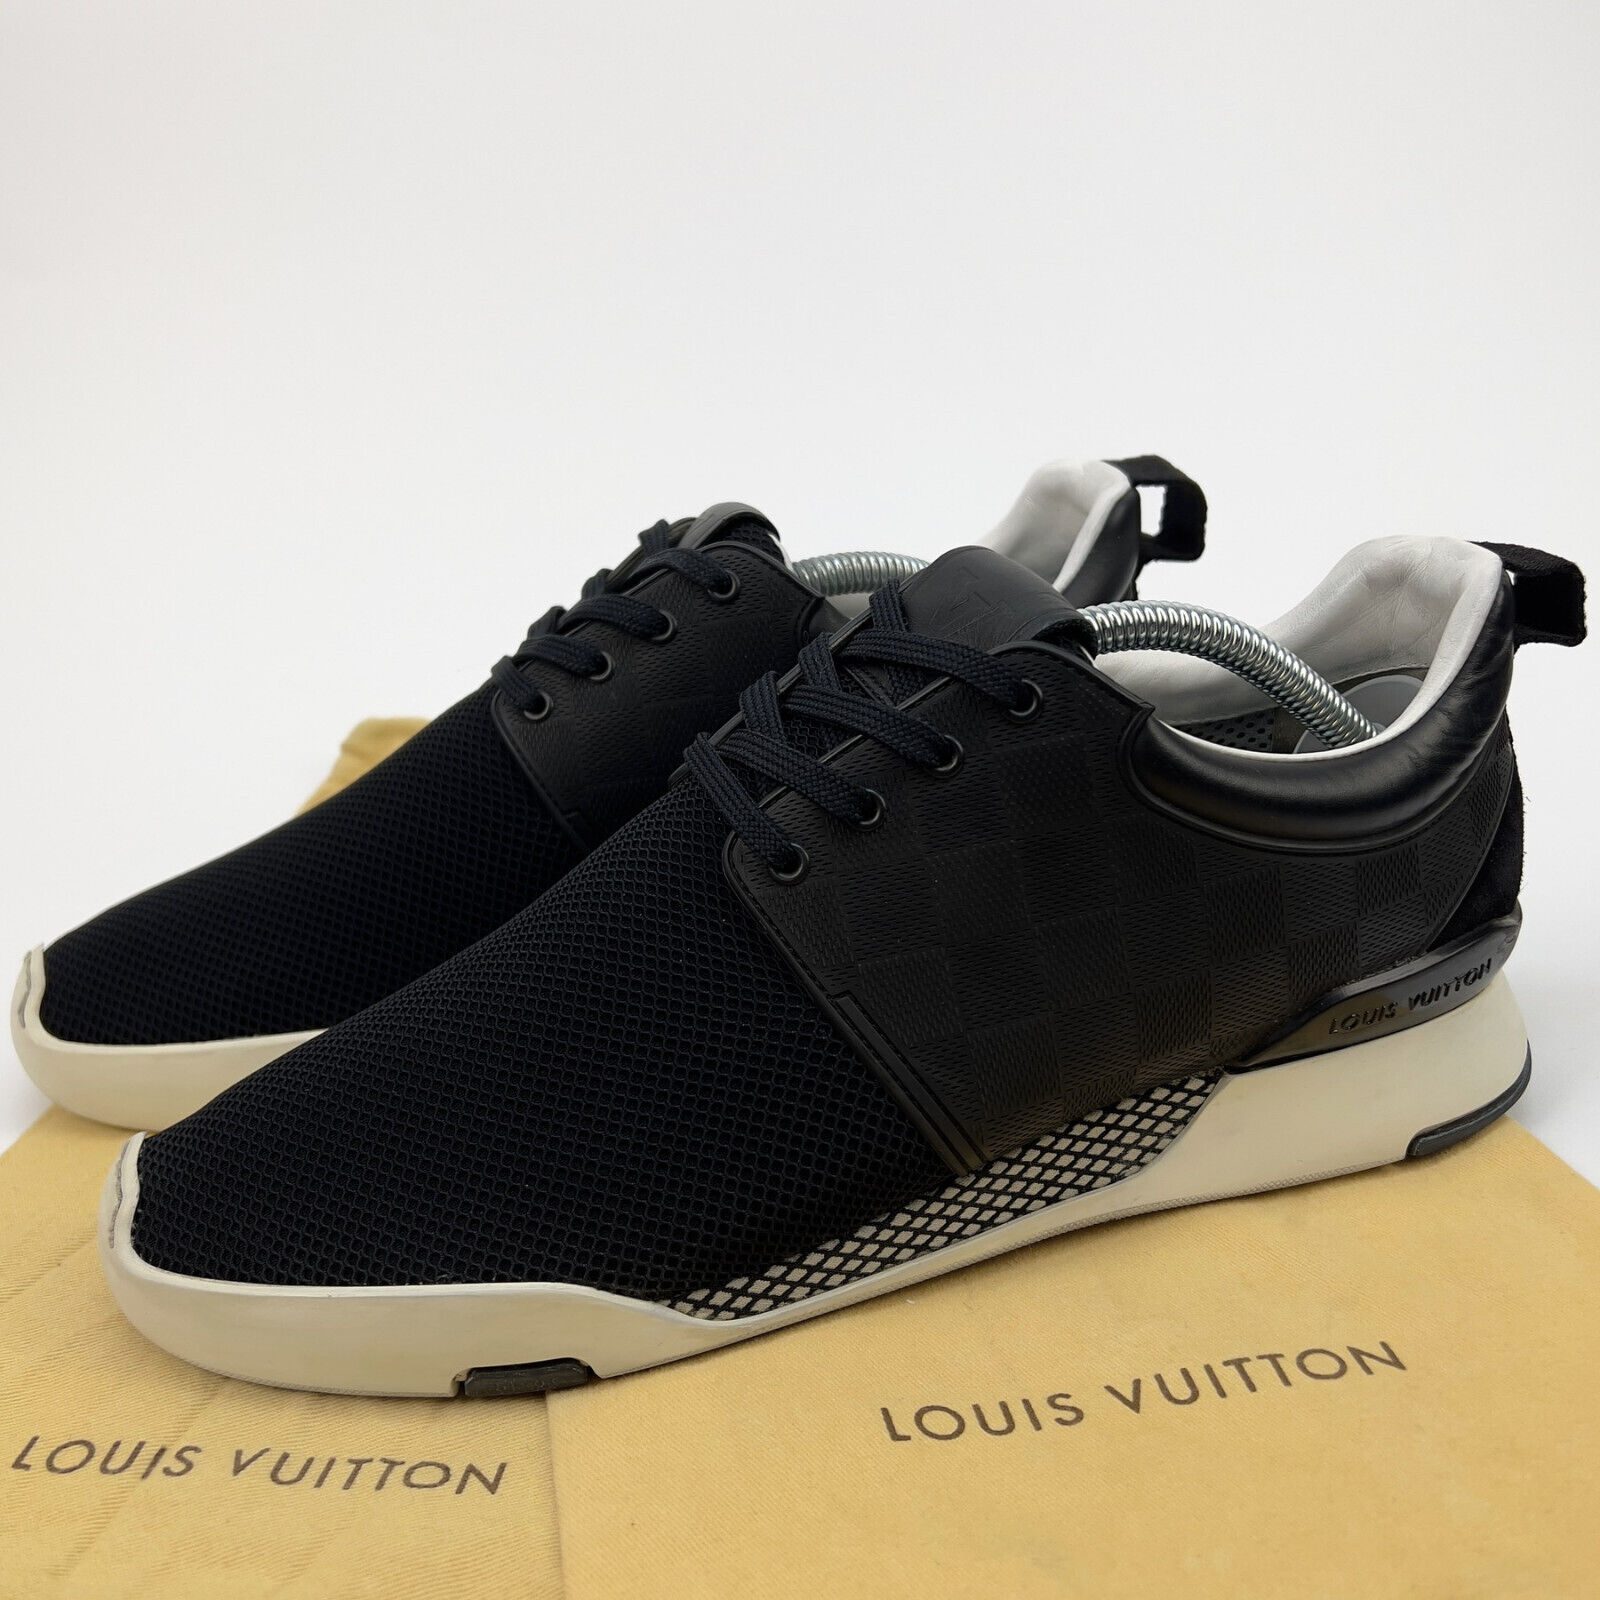 Louis Vuitton Men's US 8.5 Black Camo Fastlane Sneaker 61lv628s at